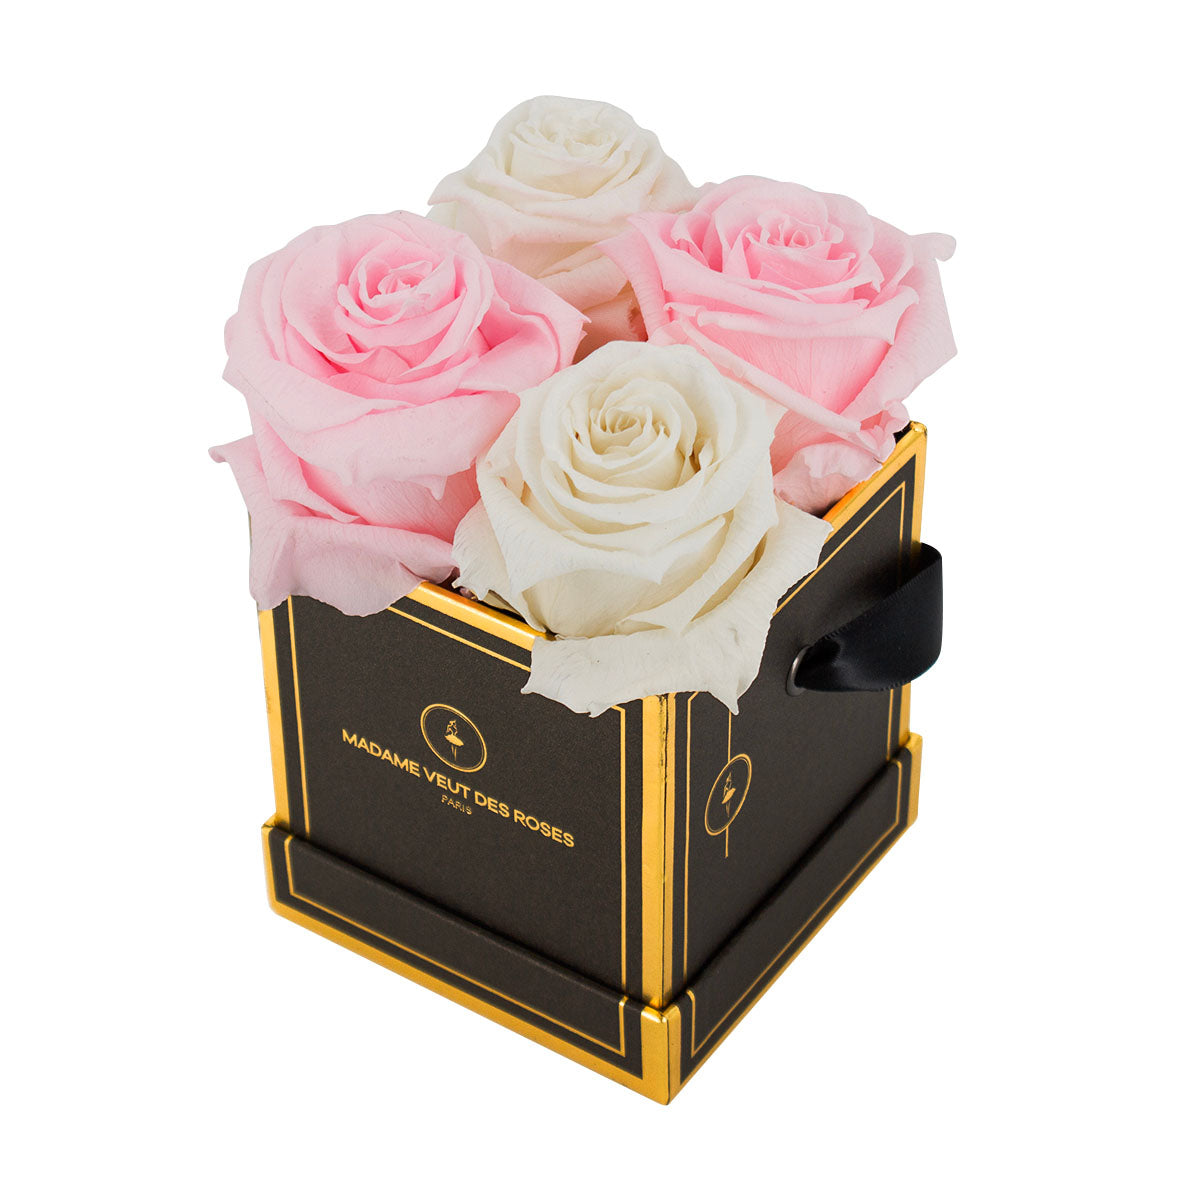 Carré Mini - Roses éternelles - Madame Veut Des Roses